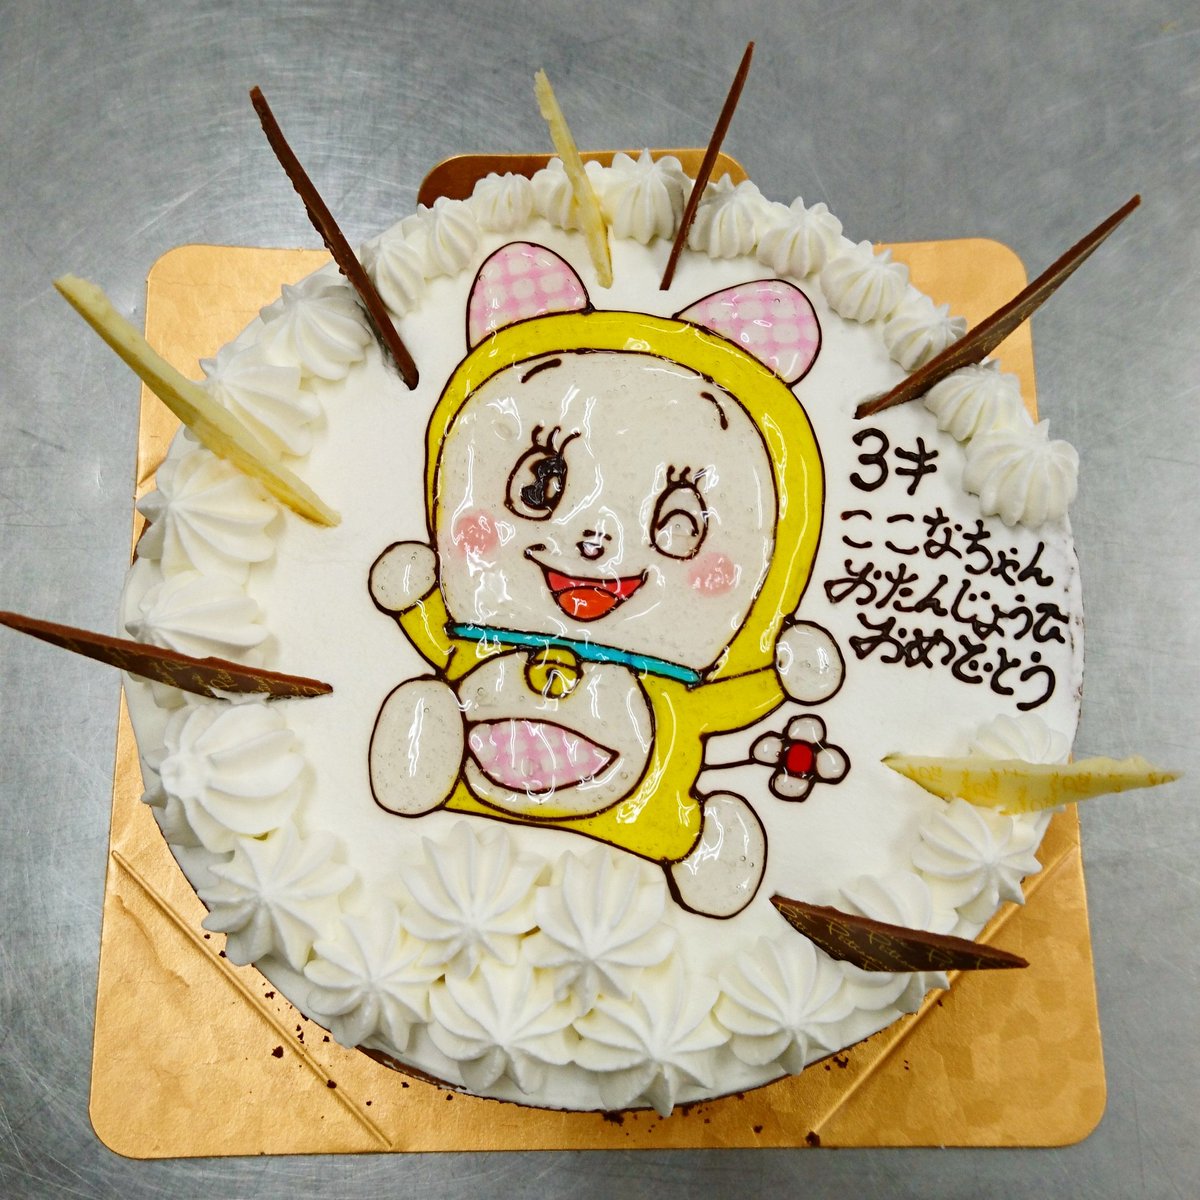 ショコラファン 新静岡セノバ V Twitter コチラは以前描いたモノです ドラミちゃん O 頭がまん丸じゃないのが難しいのよね R まん丸も難しいけどね イラストケーキ バースデーケーキ ドラミちゃん